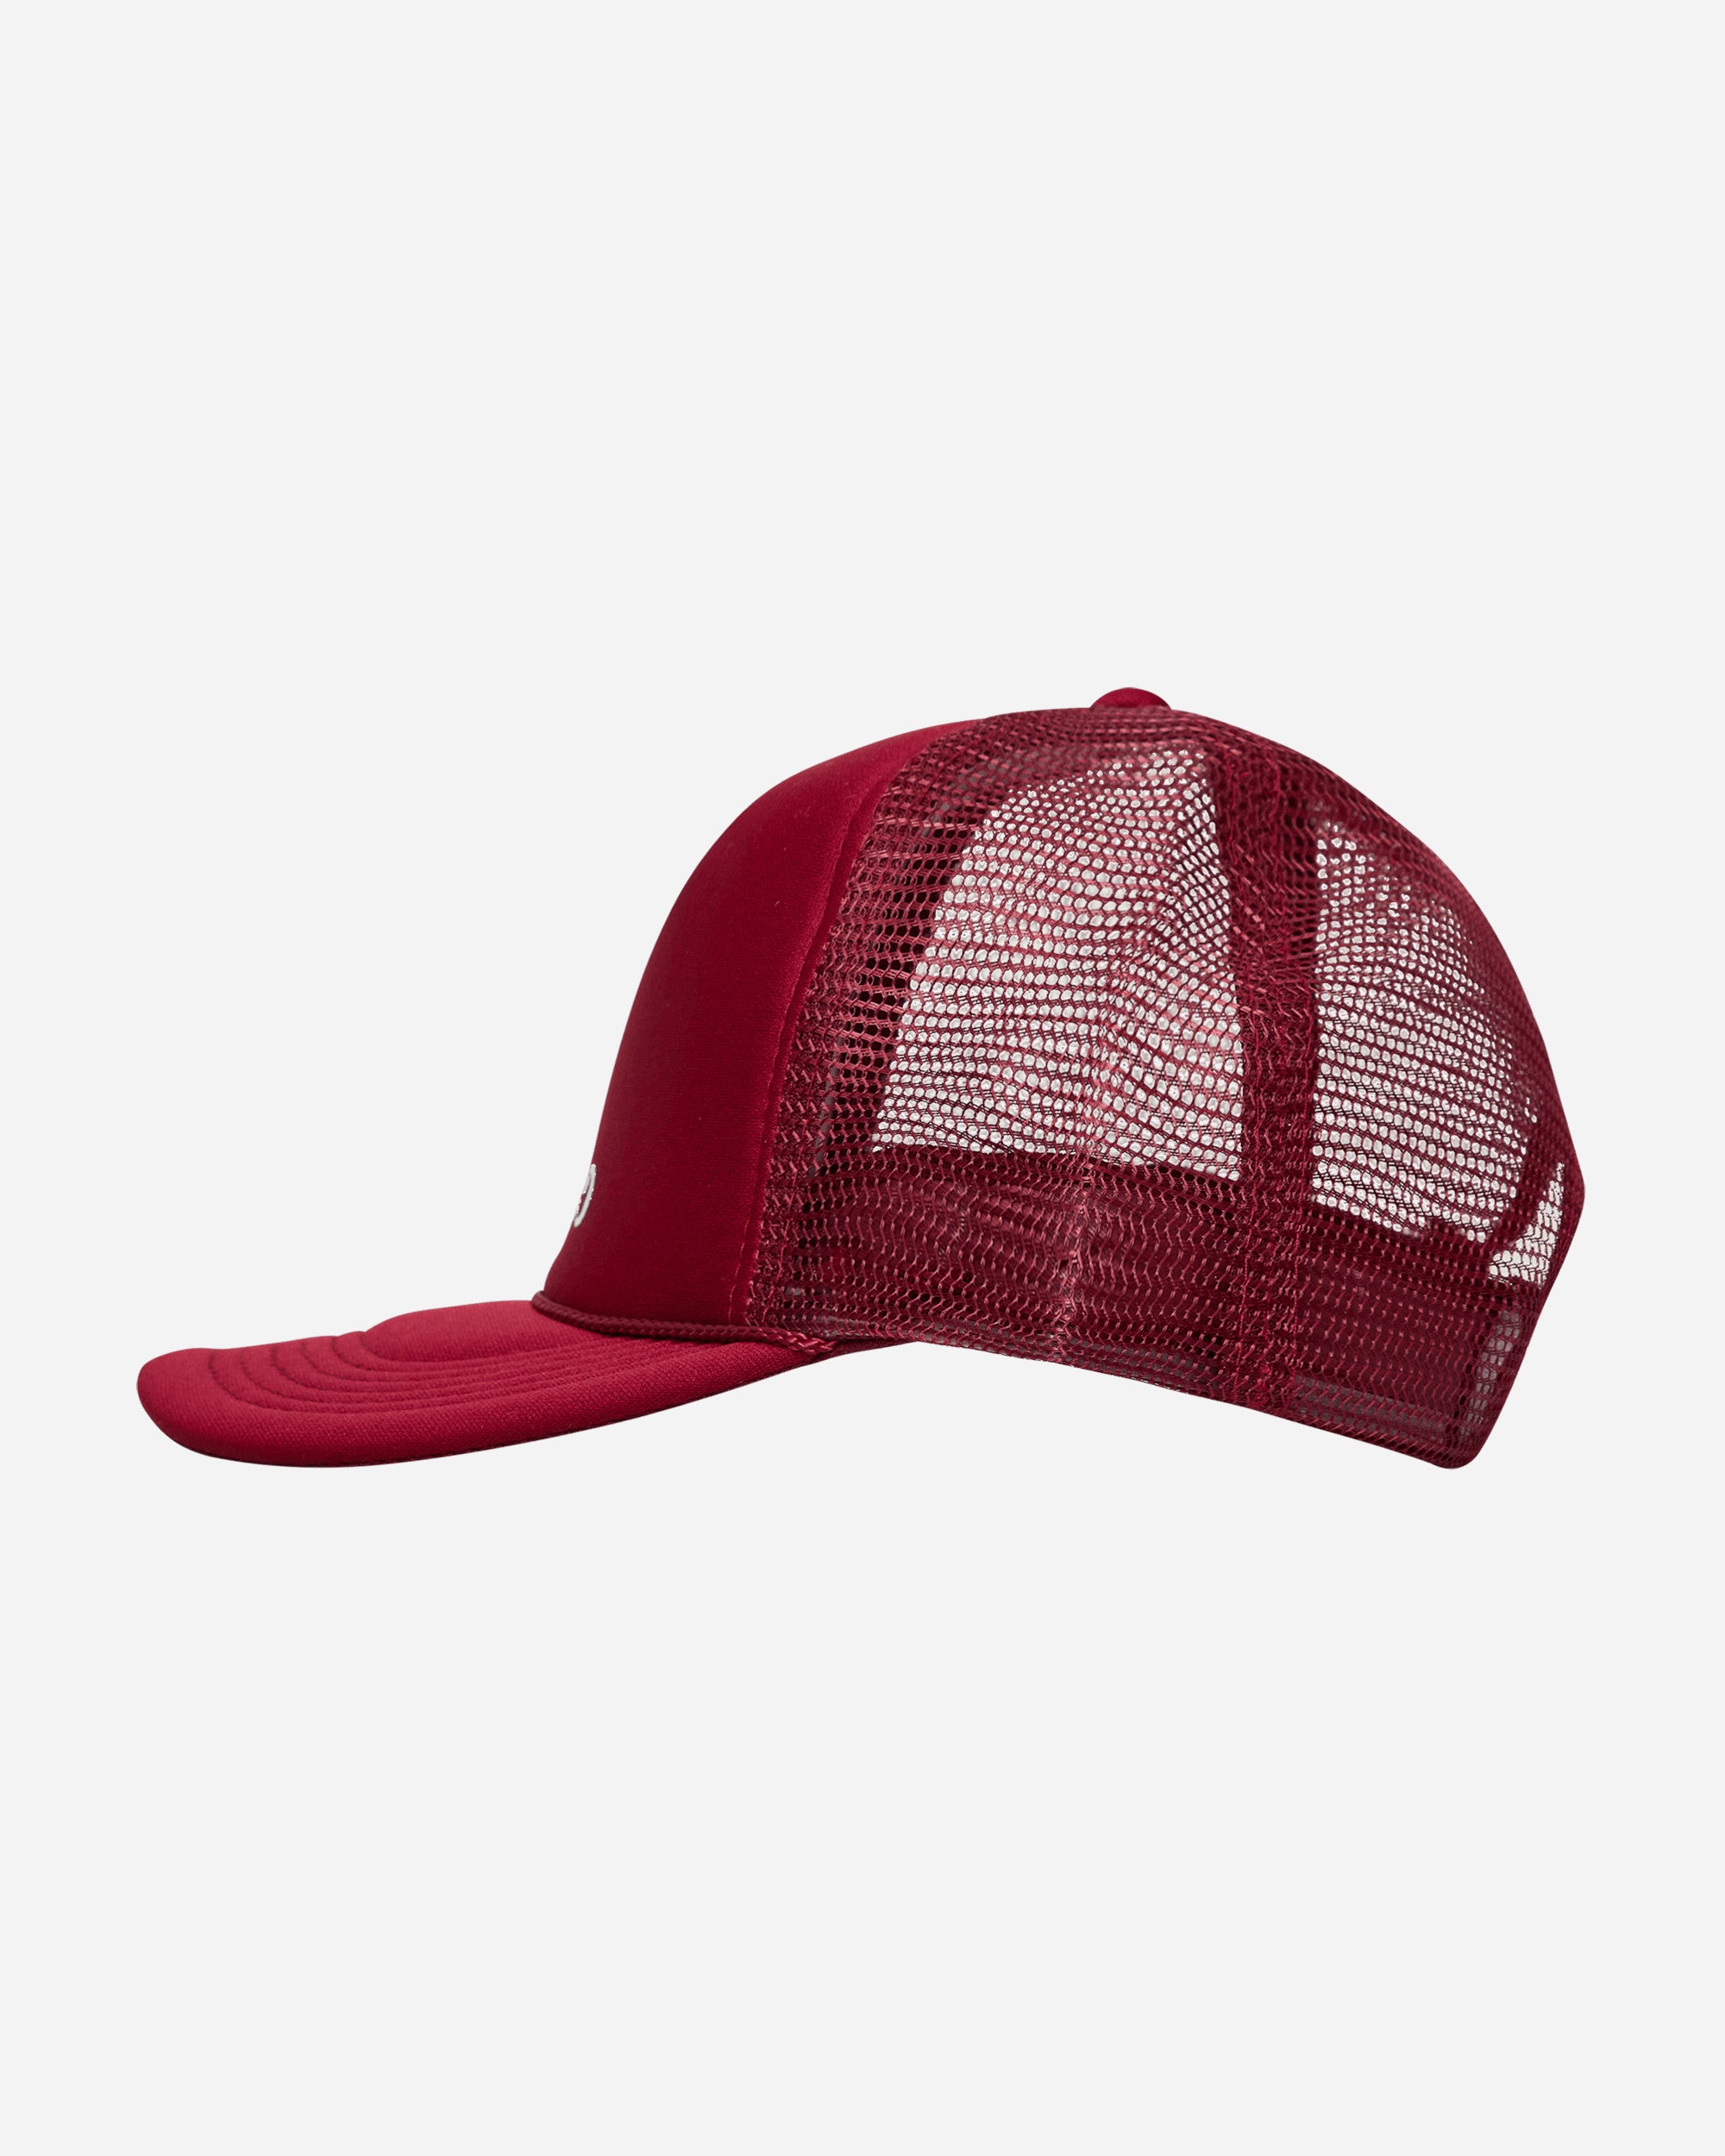 GADID ANONIEM JUDE / RED CAP 1st デザイン